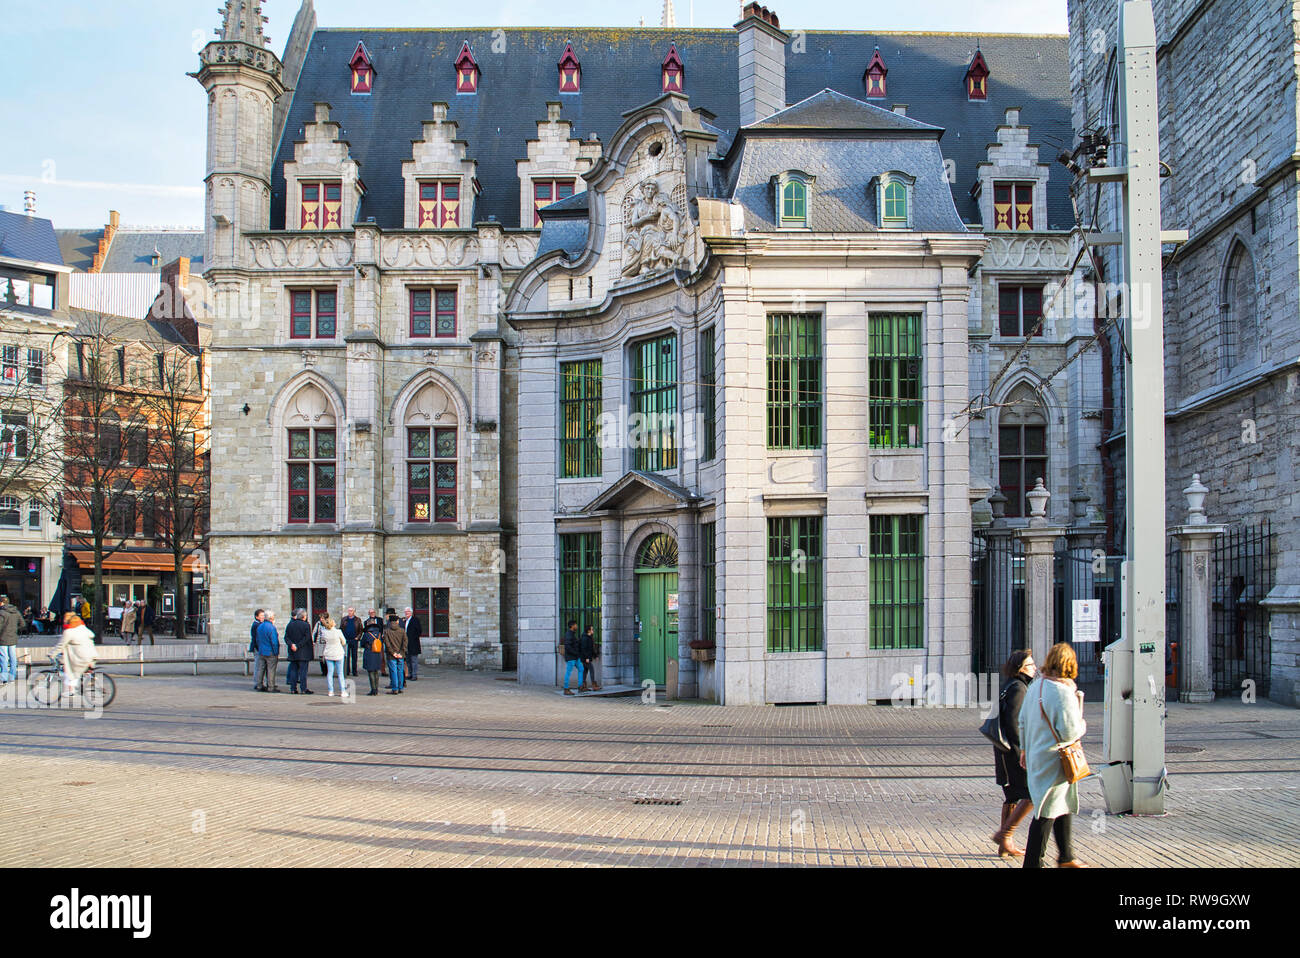 GENT, Belgio - 17 febbraio 2019: passeggiata attraverso le strade della città, vedute di edifici storici, superba architettura stile Foto Stock